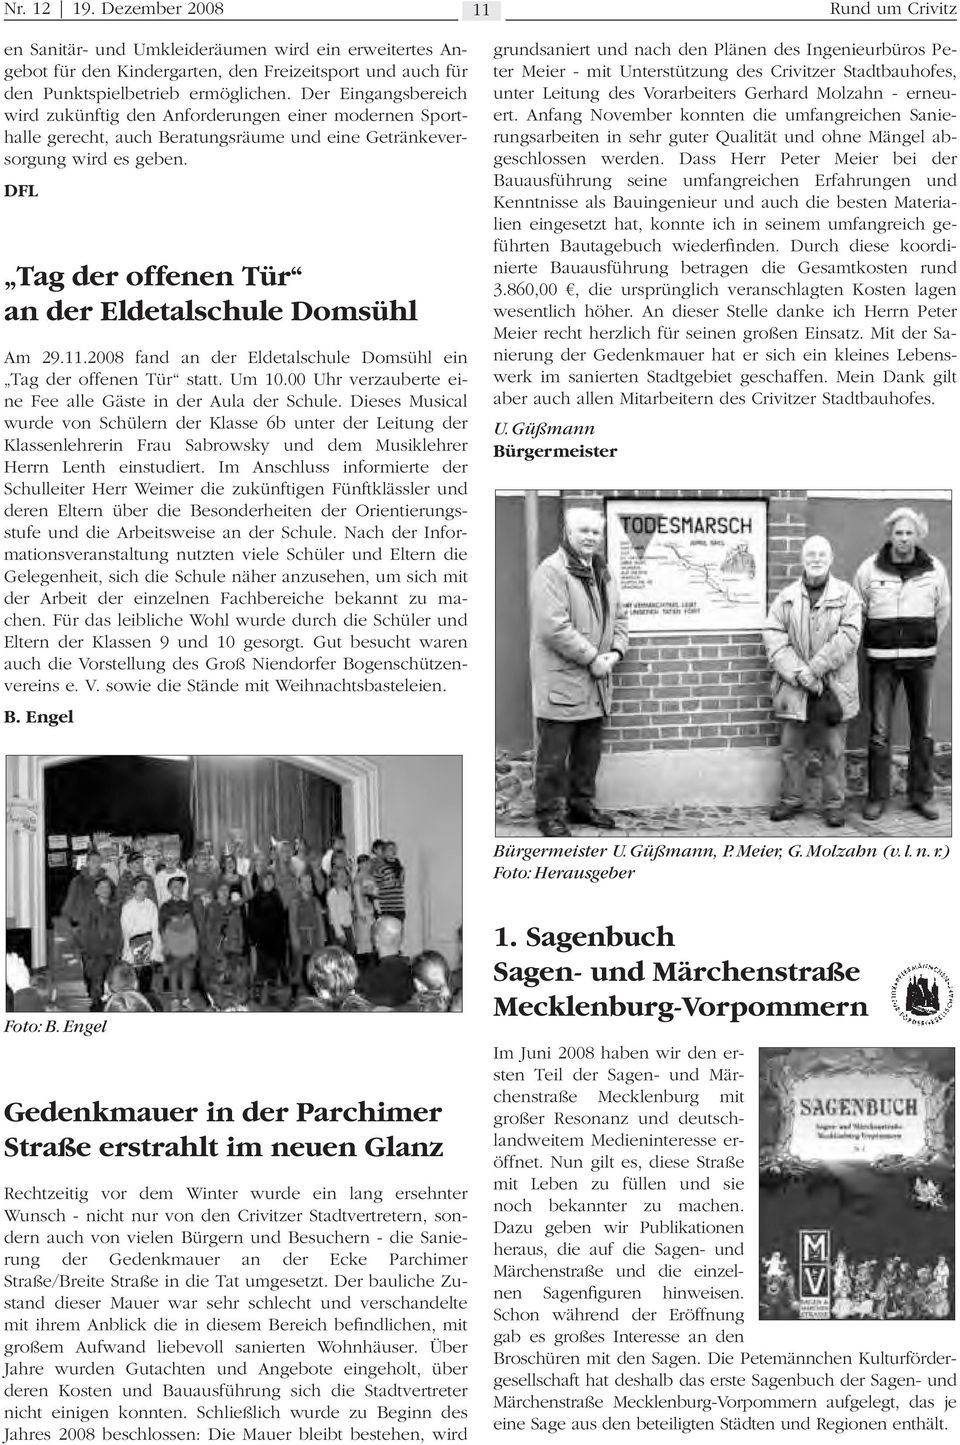 DFL Tag der offenen Tür an der Eldetalschule Domsühl Am 29.11.2008 fand an der Eldetalschule Domsühl ein Tag der offenen Tür statt. Um 10.00 Uhr verzauberte eine Fee alle Gäste in der Aula der Schule.